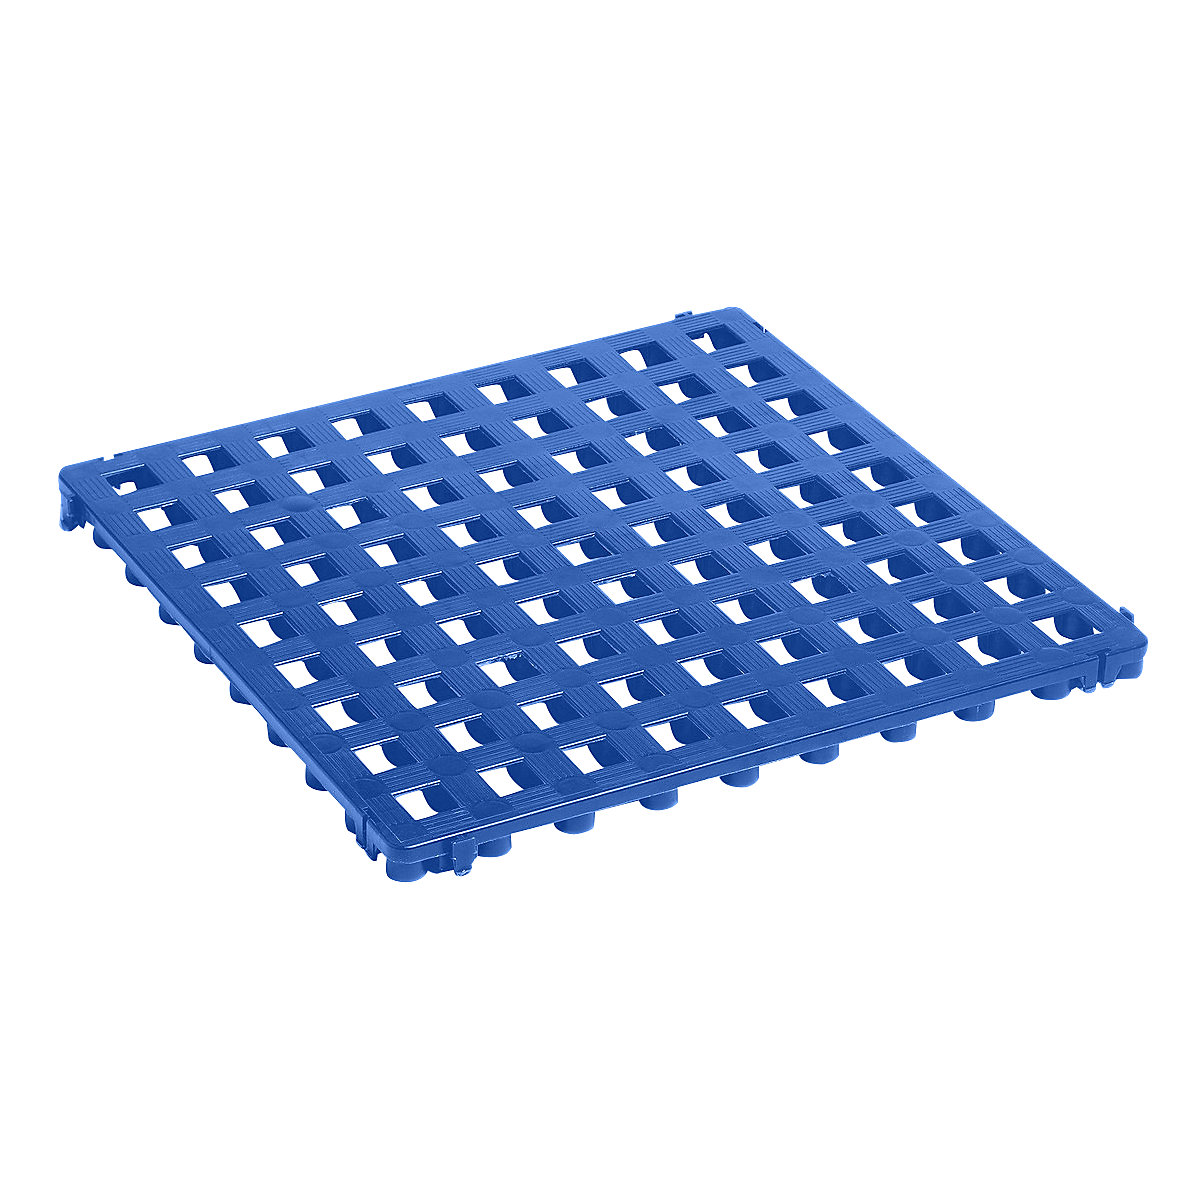 Ruszt podłogowy z tworzywa, polietylen, 500 x 500 mm, standard, opak. 20 szt., niebieski